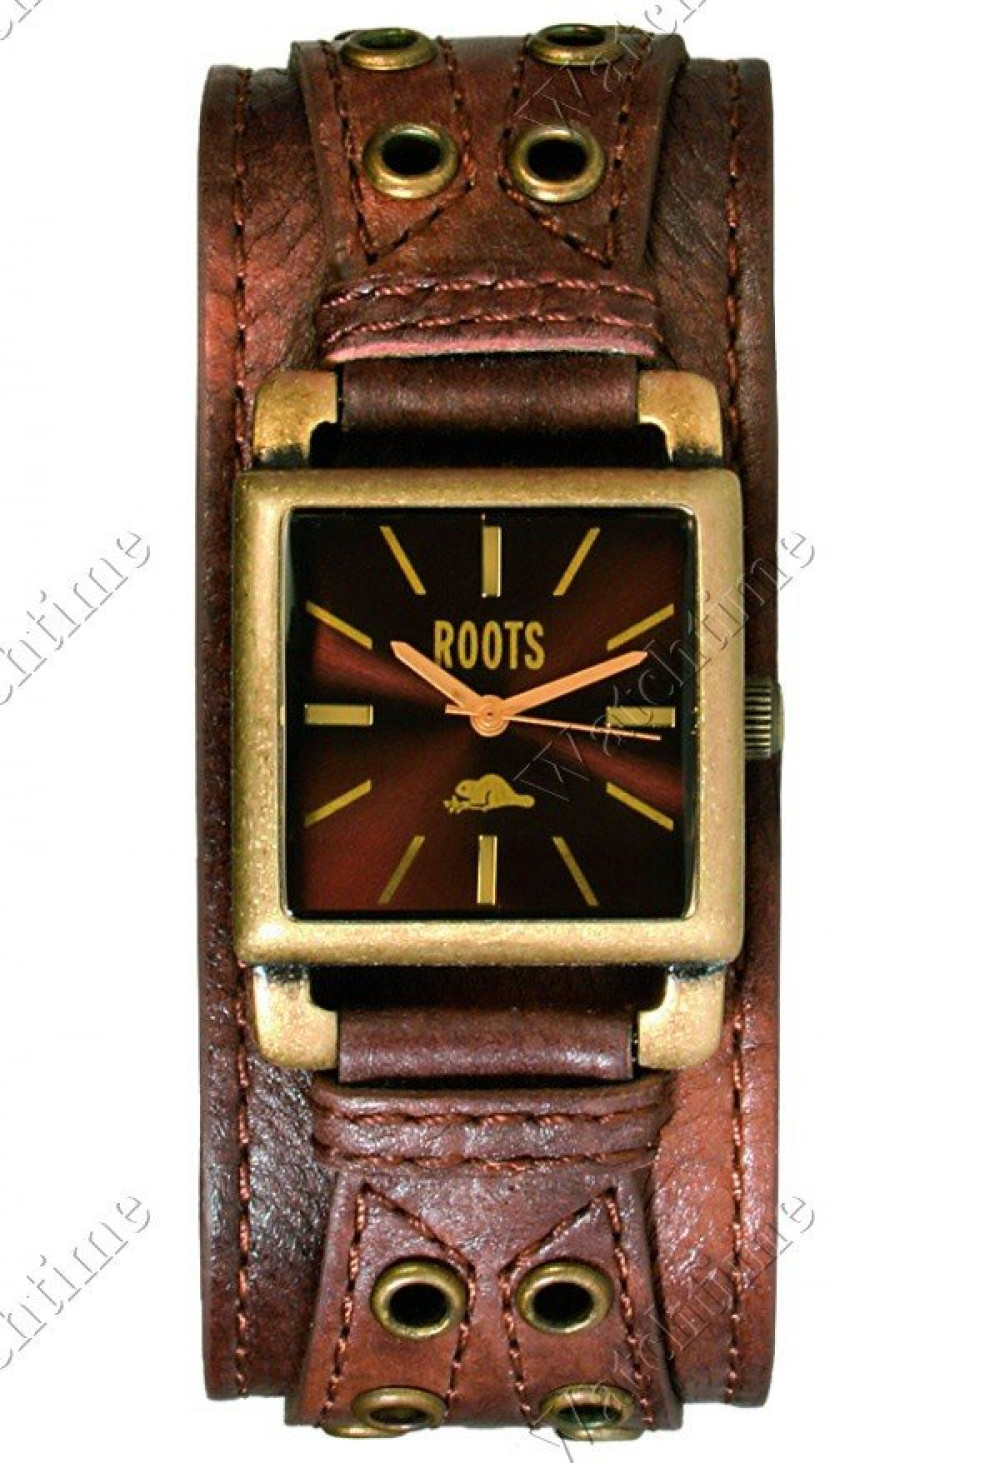 Zegarek firmy Roots, model Roots High Park